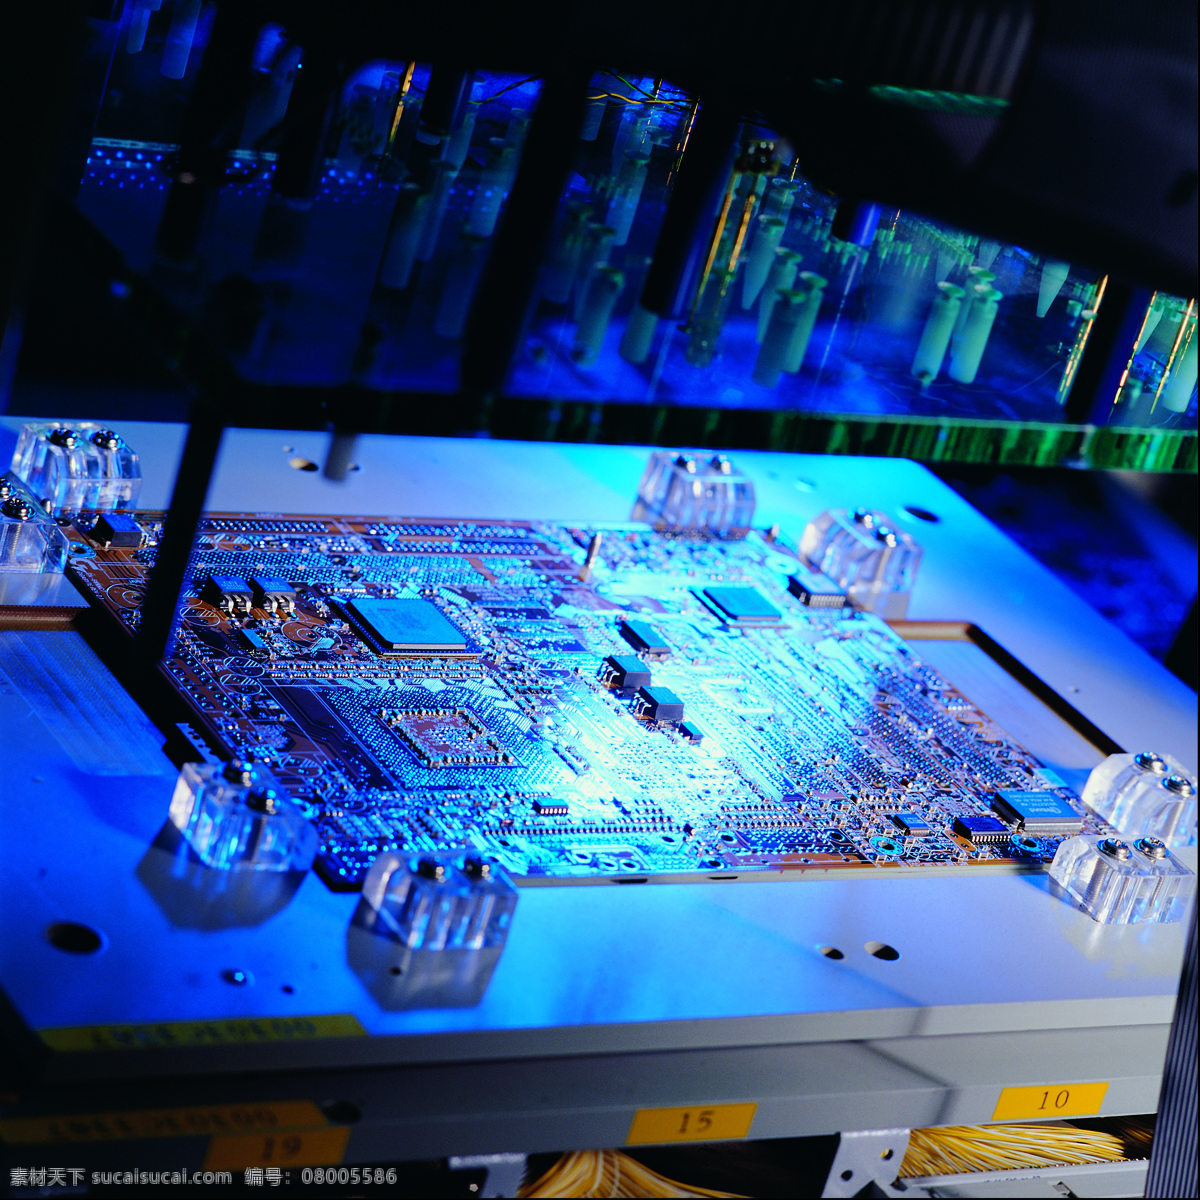 ic版 主機板 電子 零件 科技產品 零組件 工業產品 電子設備 電腦用品 工业生产 现代科技